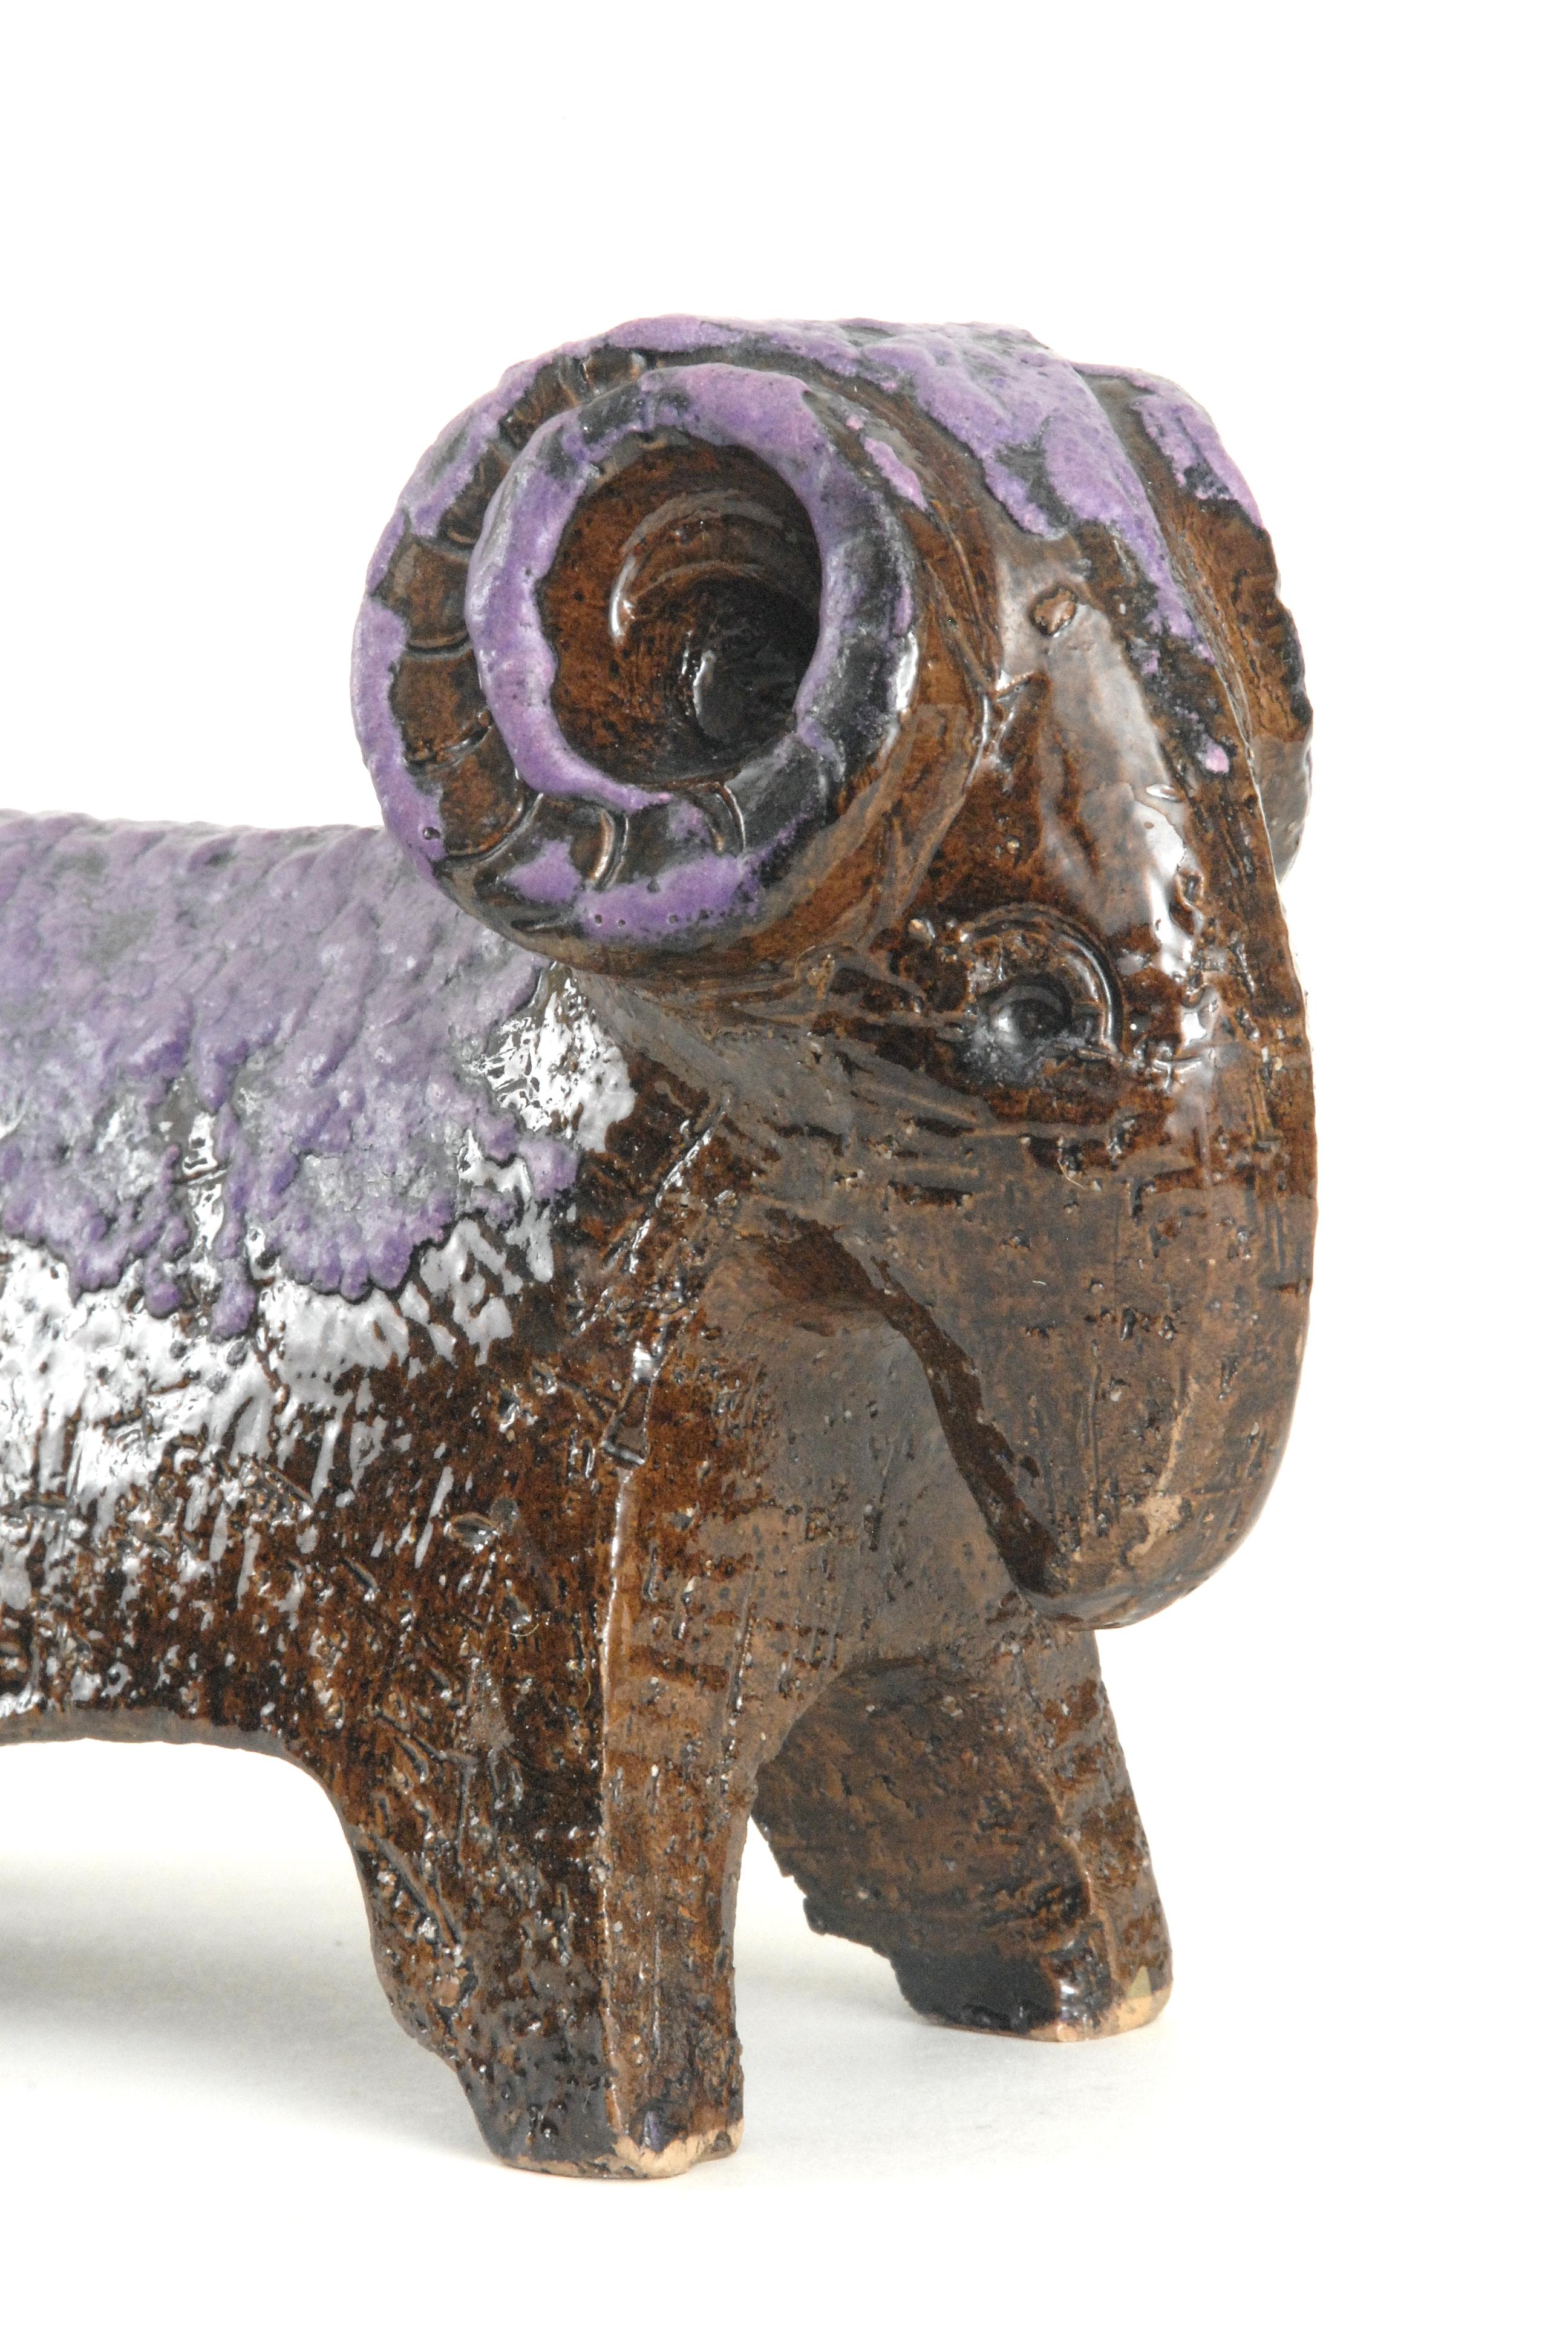 Ein kleiner, von Aldo Londi für Bitossi entworfener Widder mit einer schaumigen violetten Glasur über einem manganbraunen Glanzkörper. Unmarkiert.